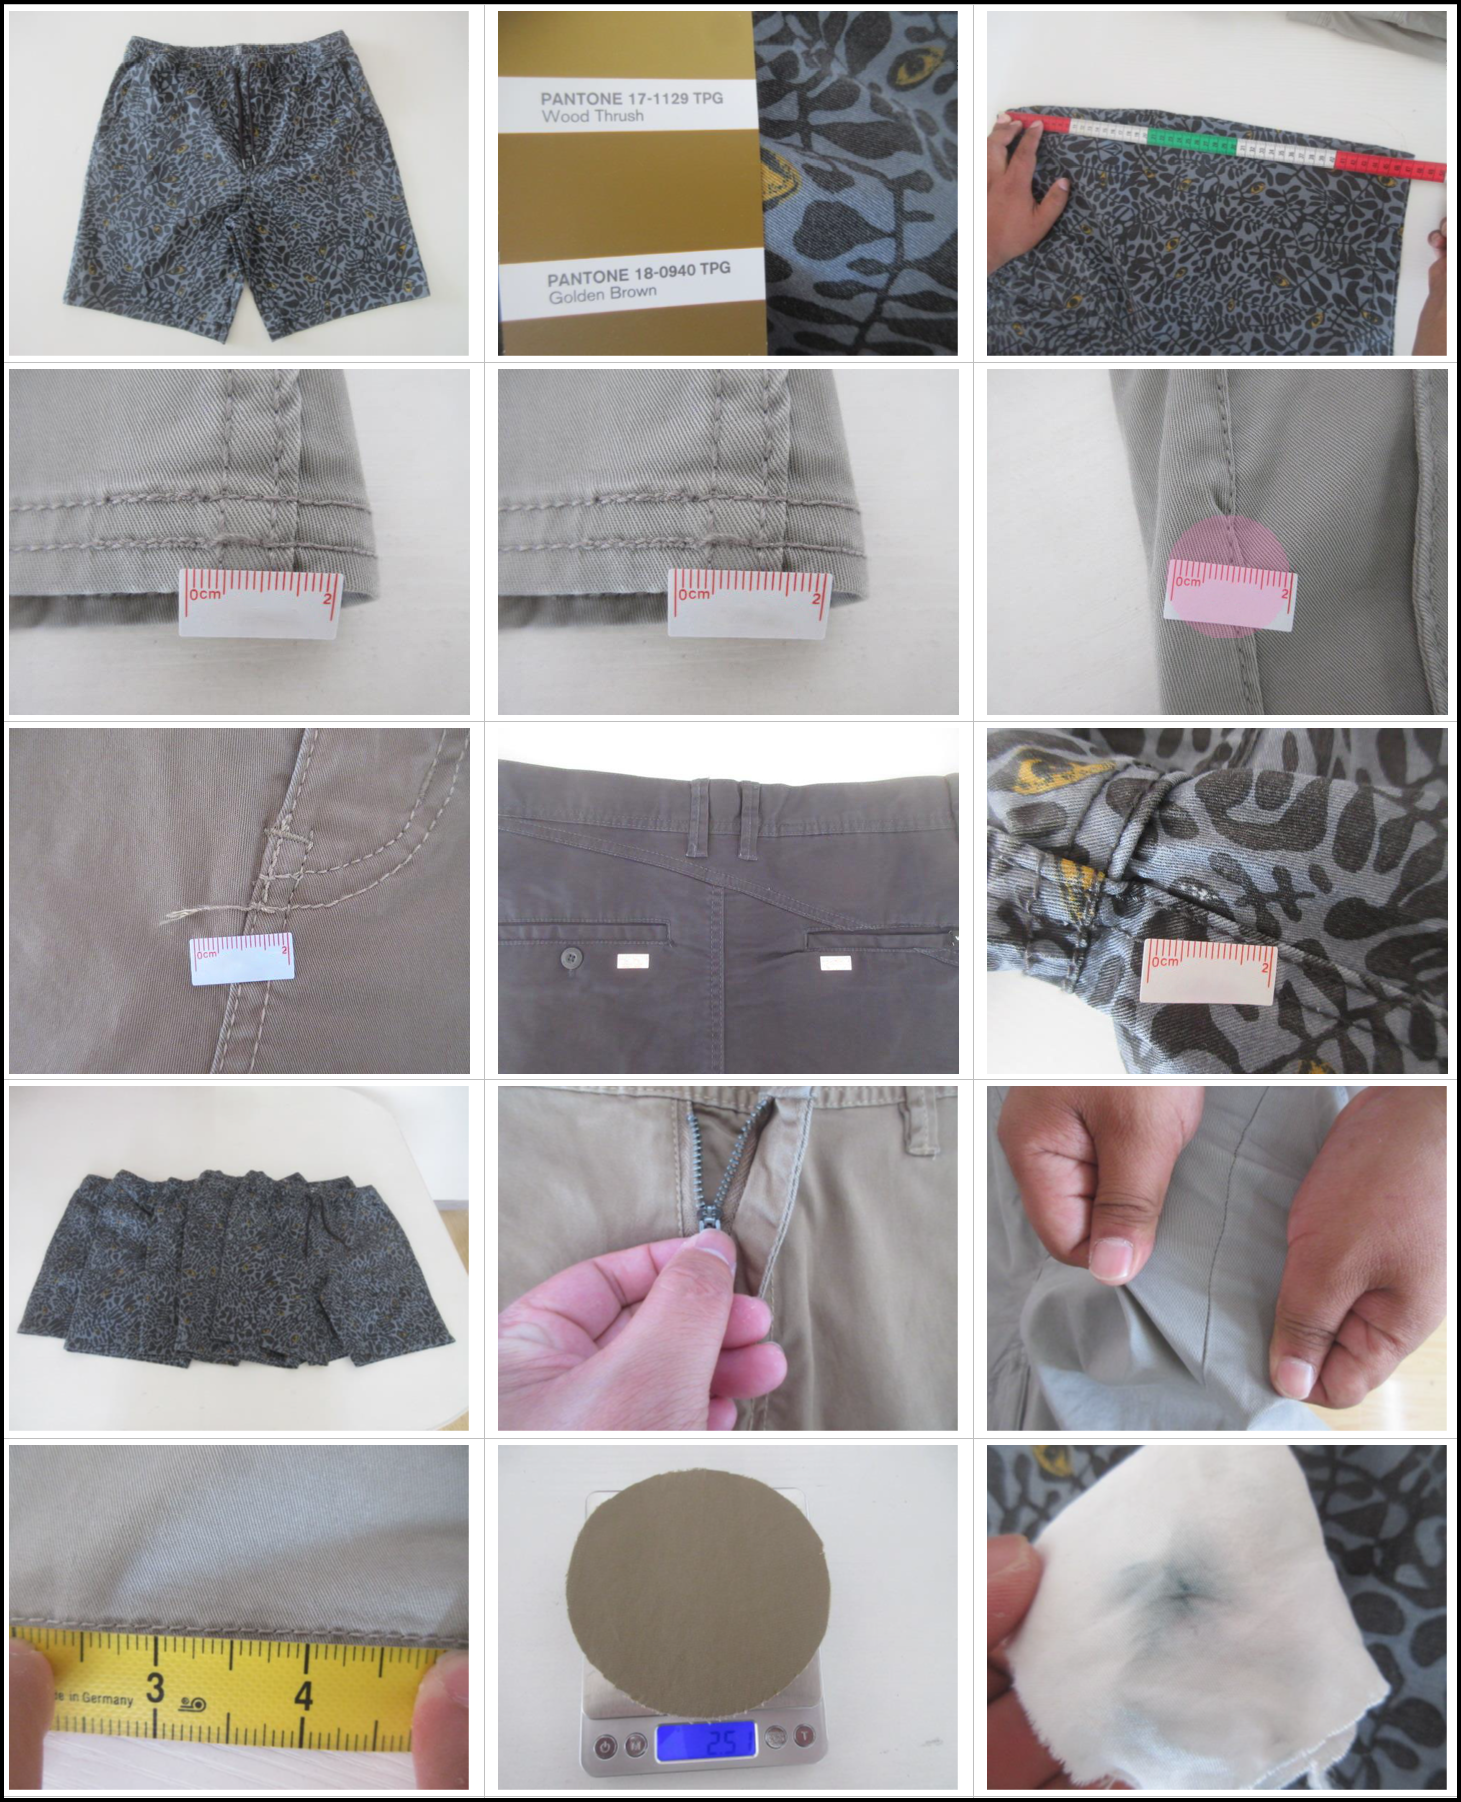 Inspection for Men's shorts